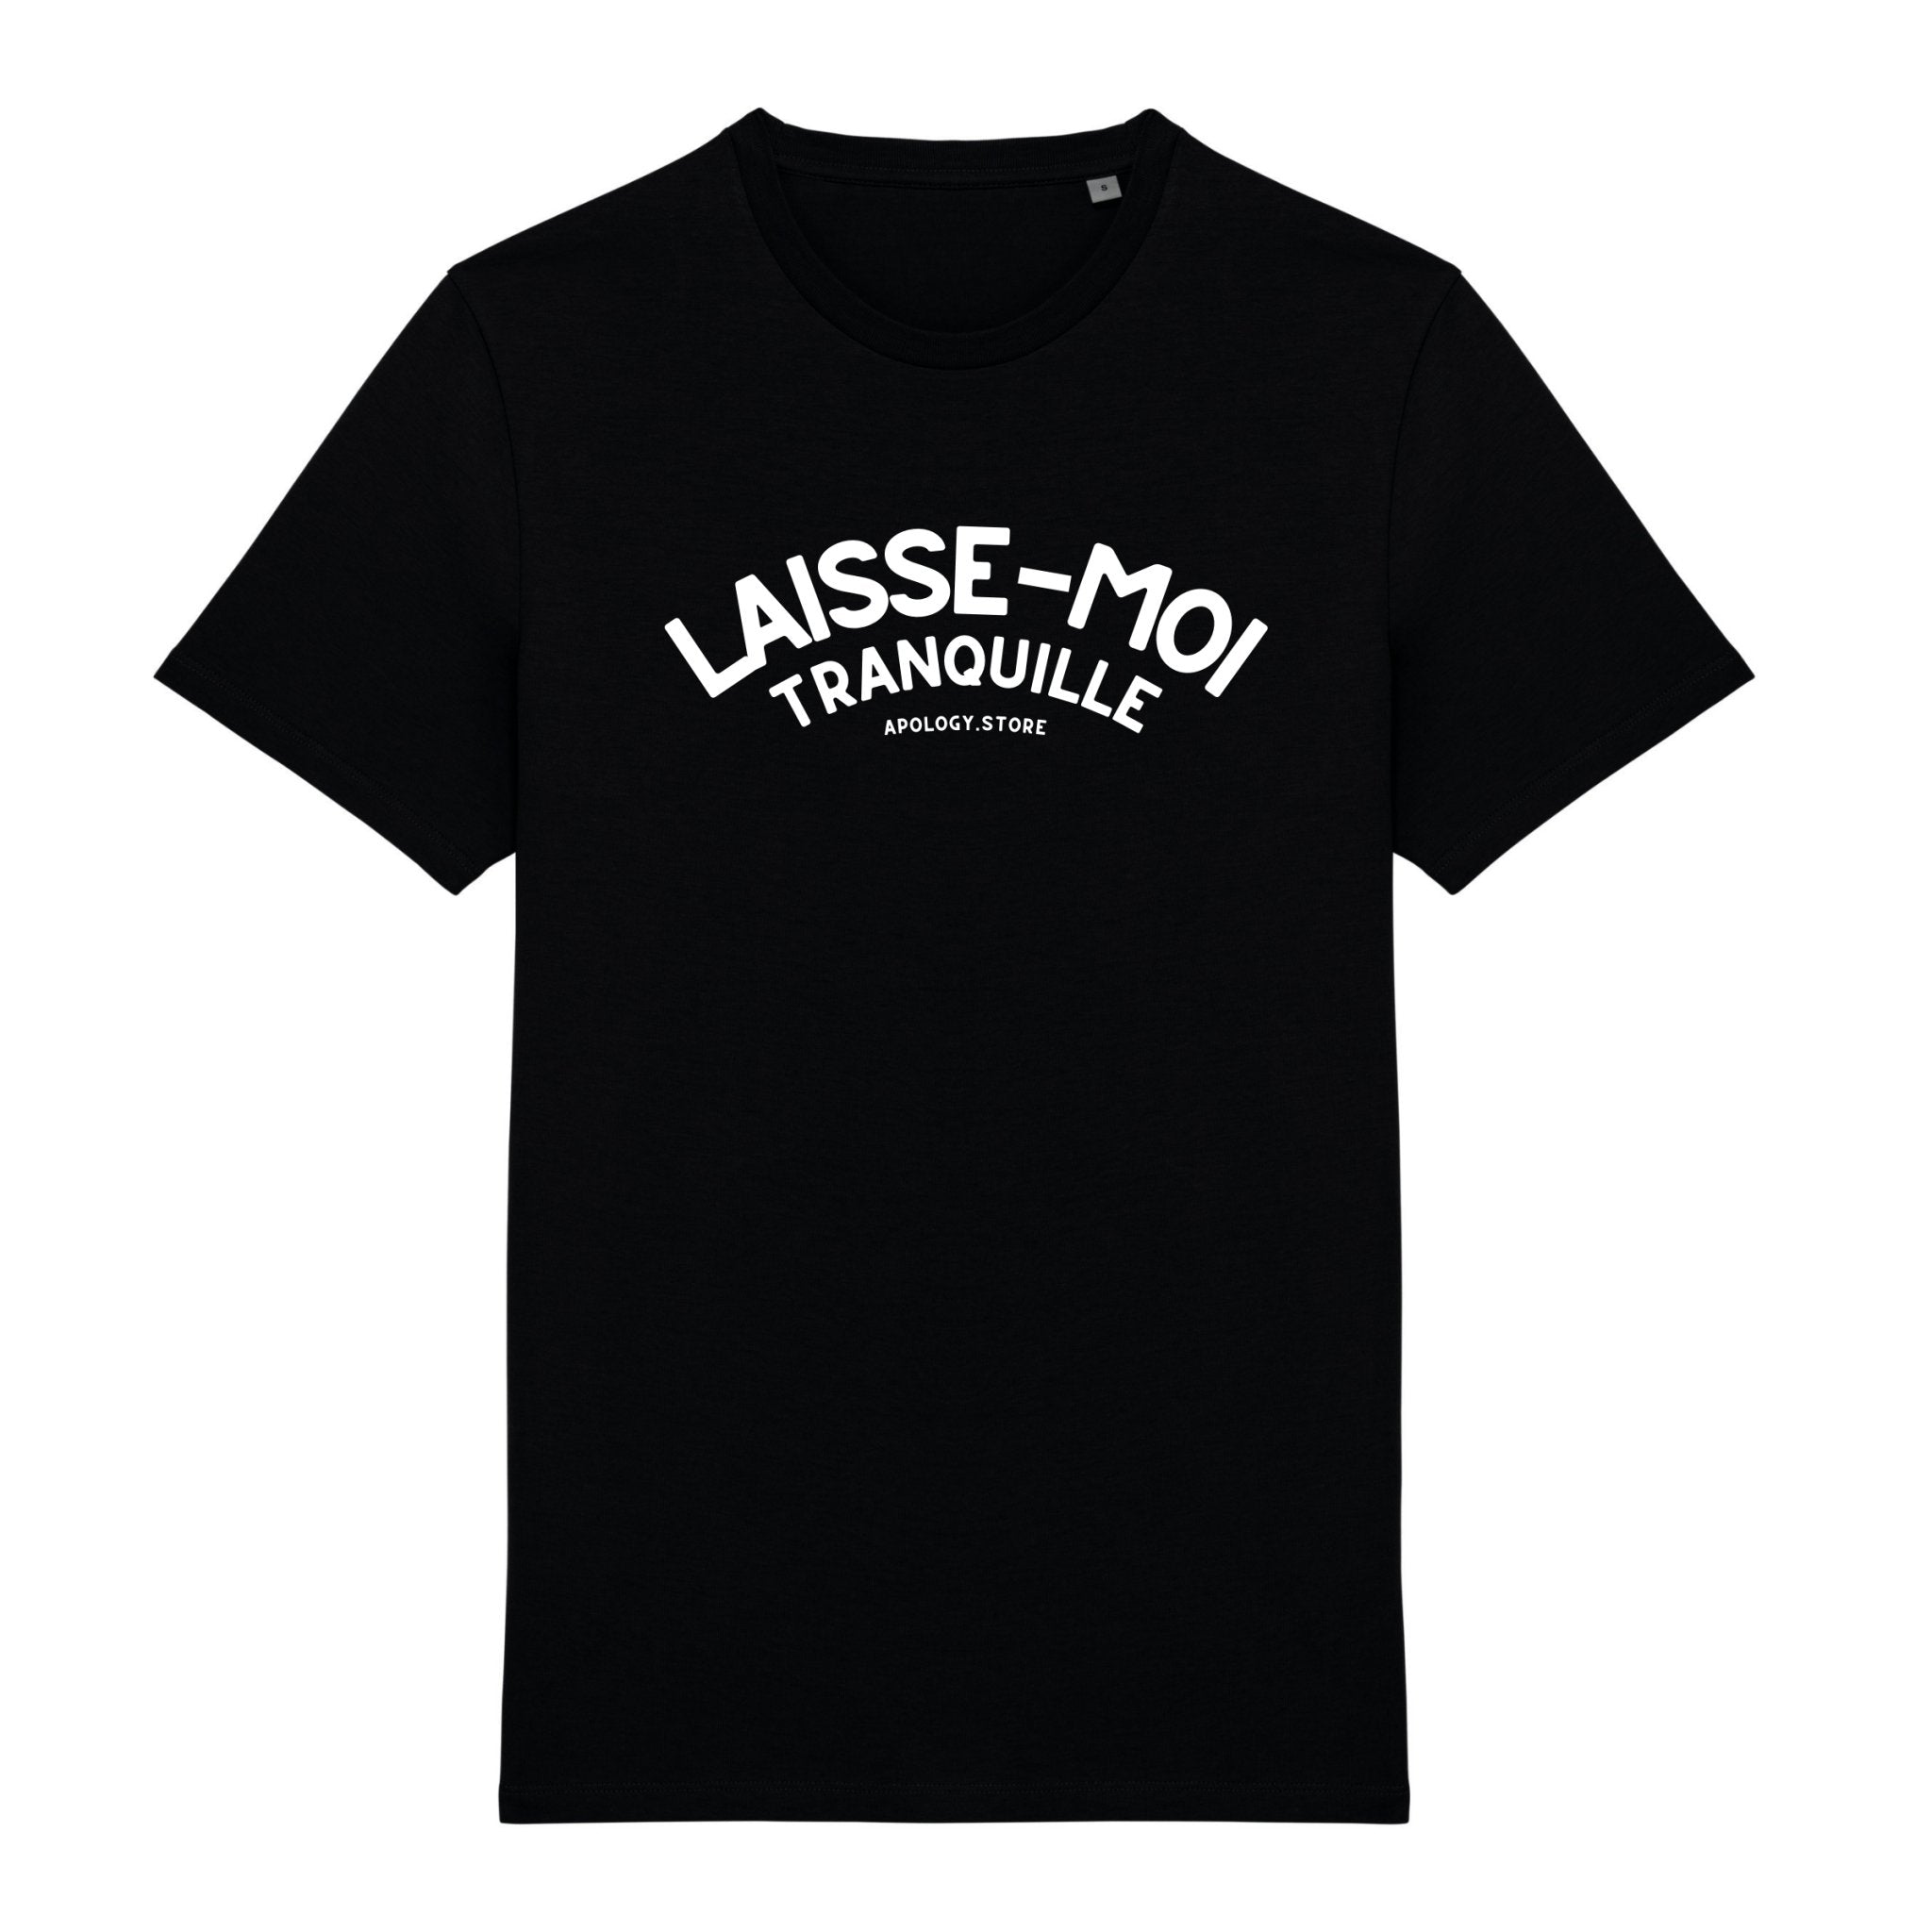 T-shirt Laisse Moi Tranquille - Fabriqué au Portugal XS Noir - Imprimé en France